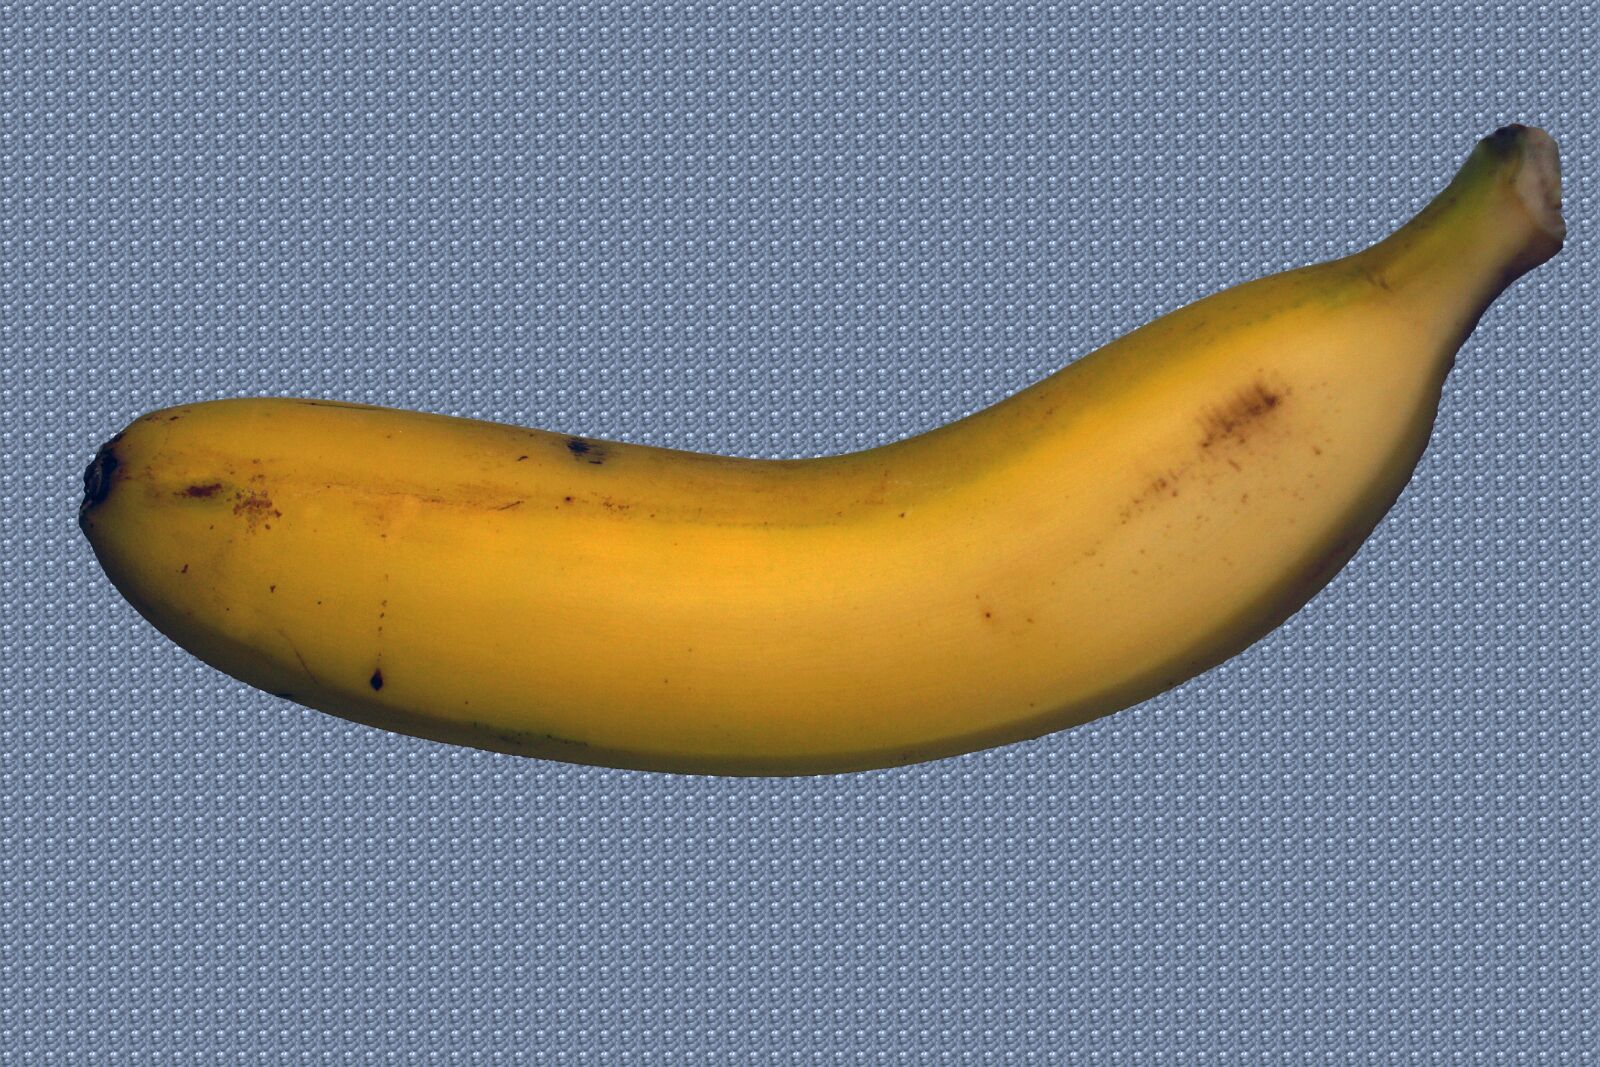 Sony SLT-A68 + Sony DT 18-70mm F3.5-5.6 sample photo. Banana canary, banana, canary photography